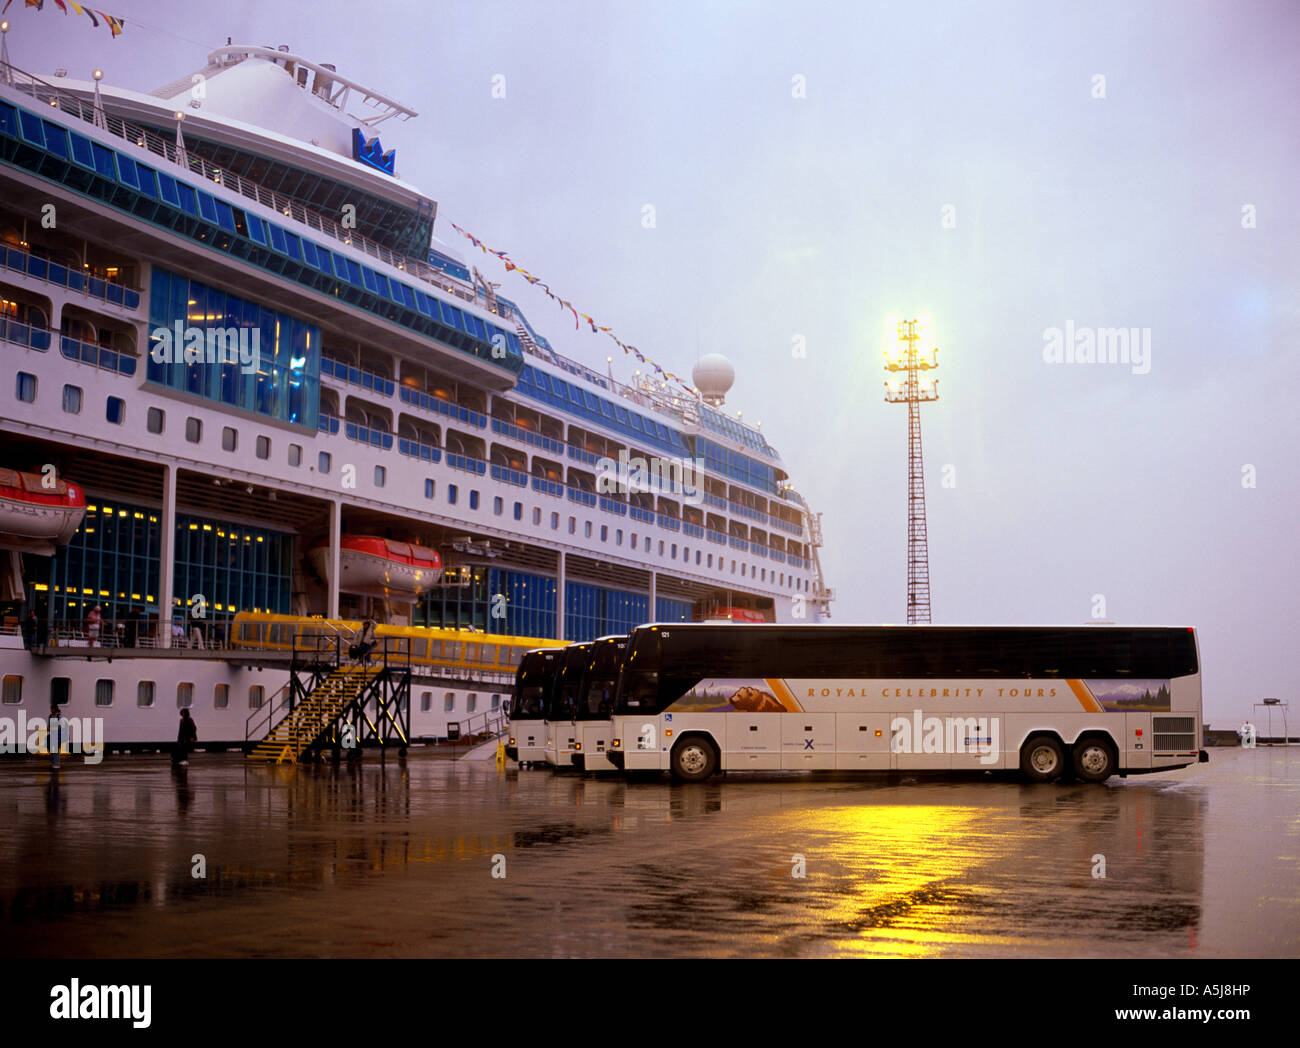 Royal Celebrity Tours autobuses alineados en el dock en Seward Foto de stock